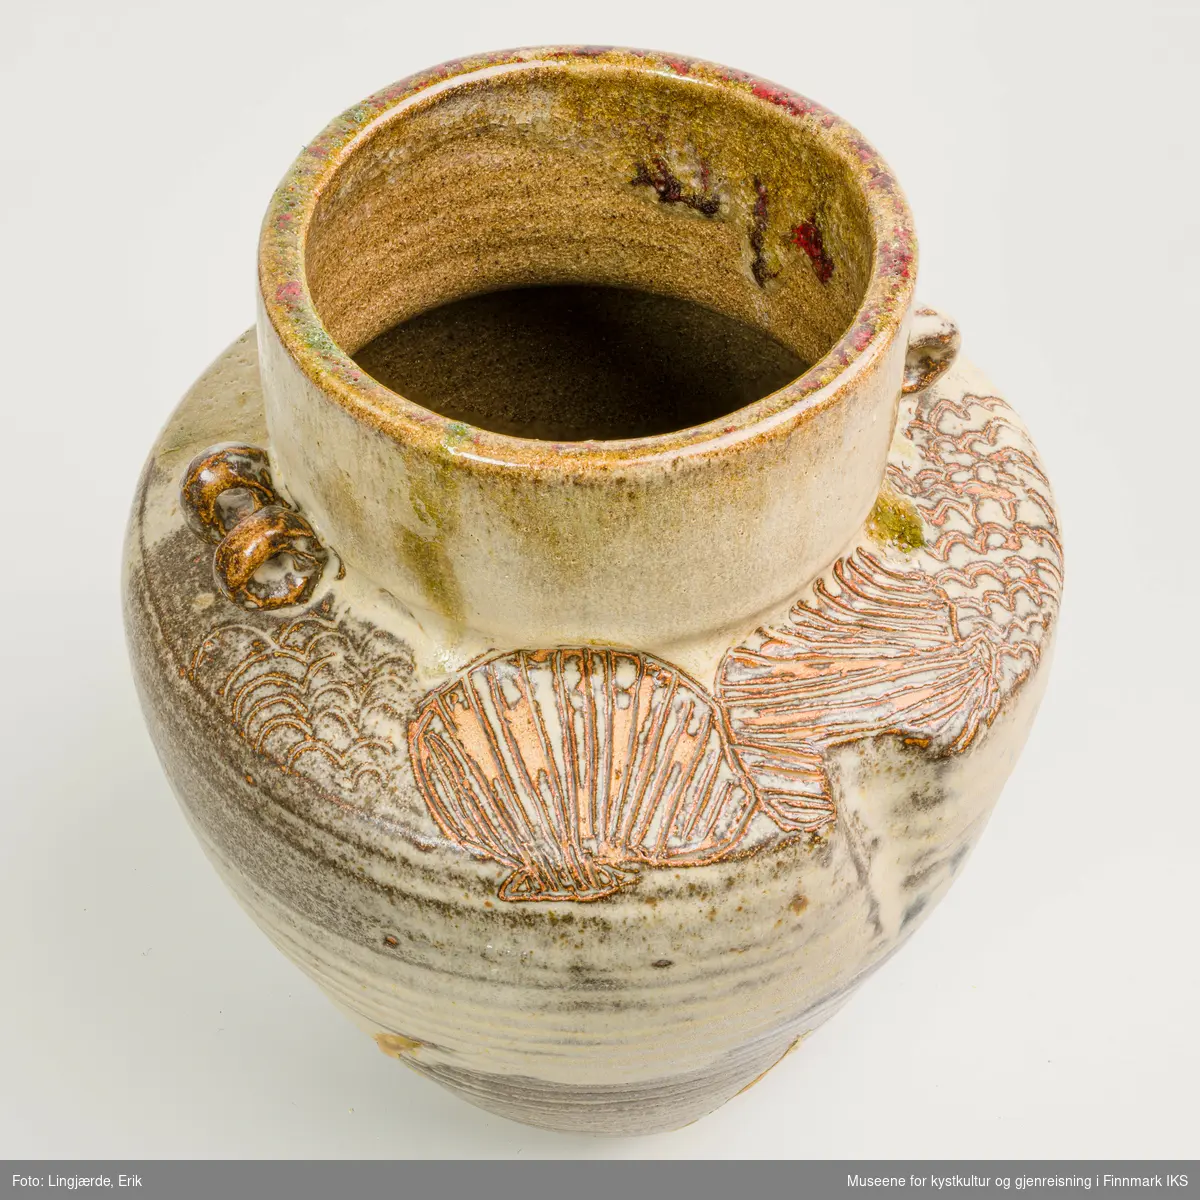 Krukken er utført i askeglasert keramikk. Overflaten består av en miks av jordtoner og forskjellige strukturelementer.